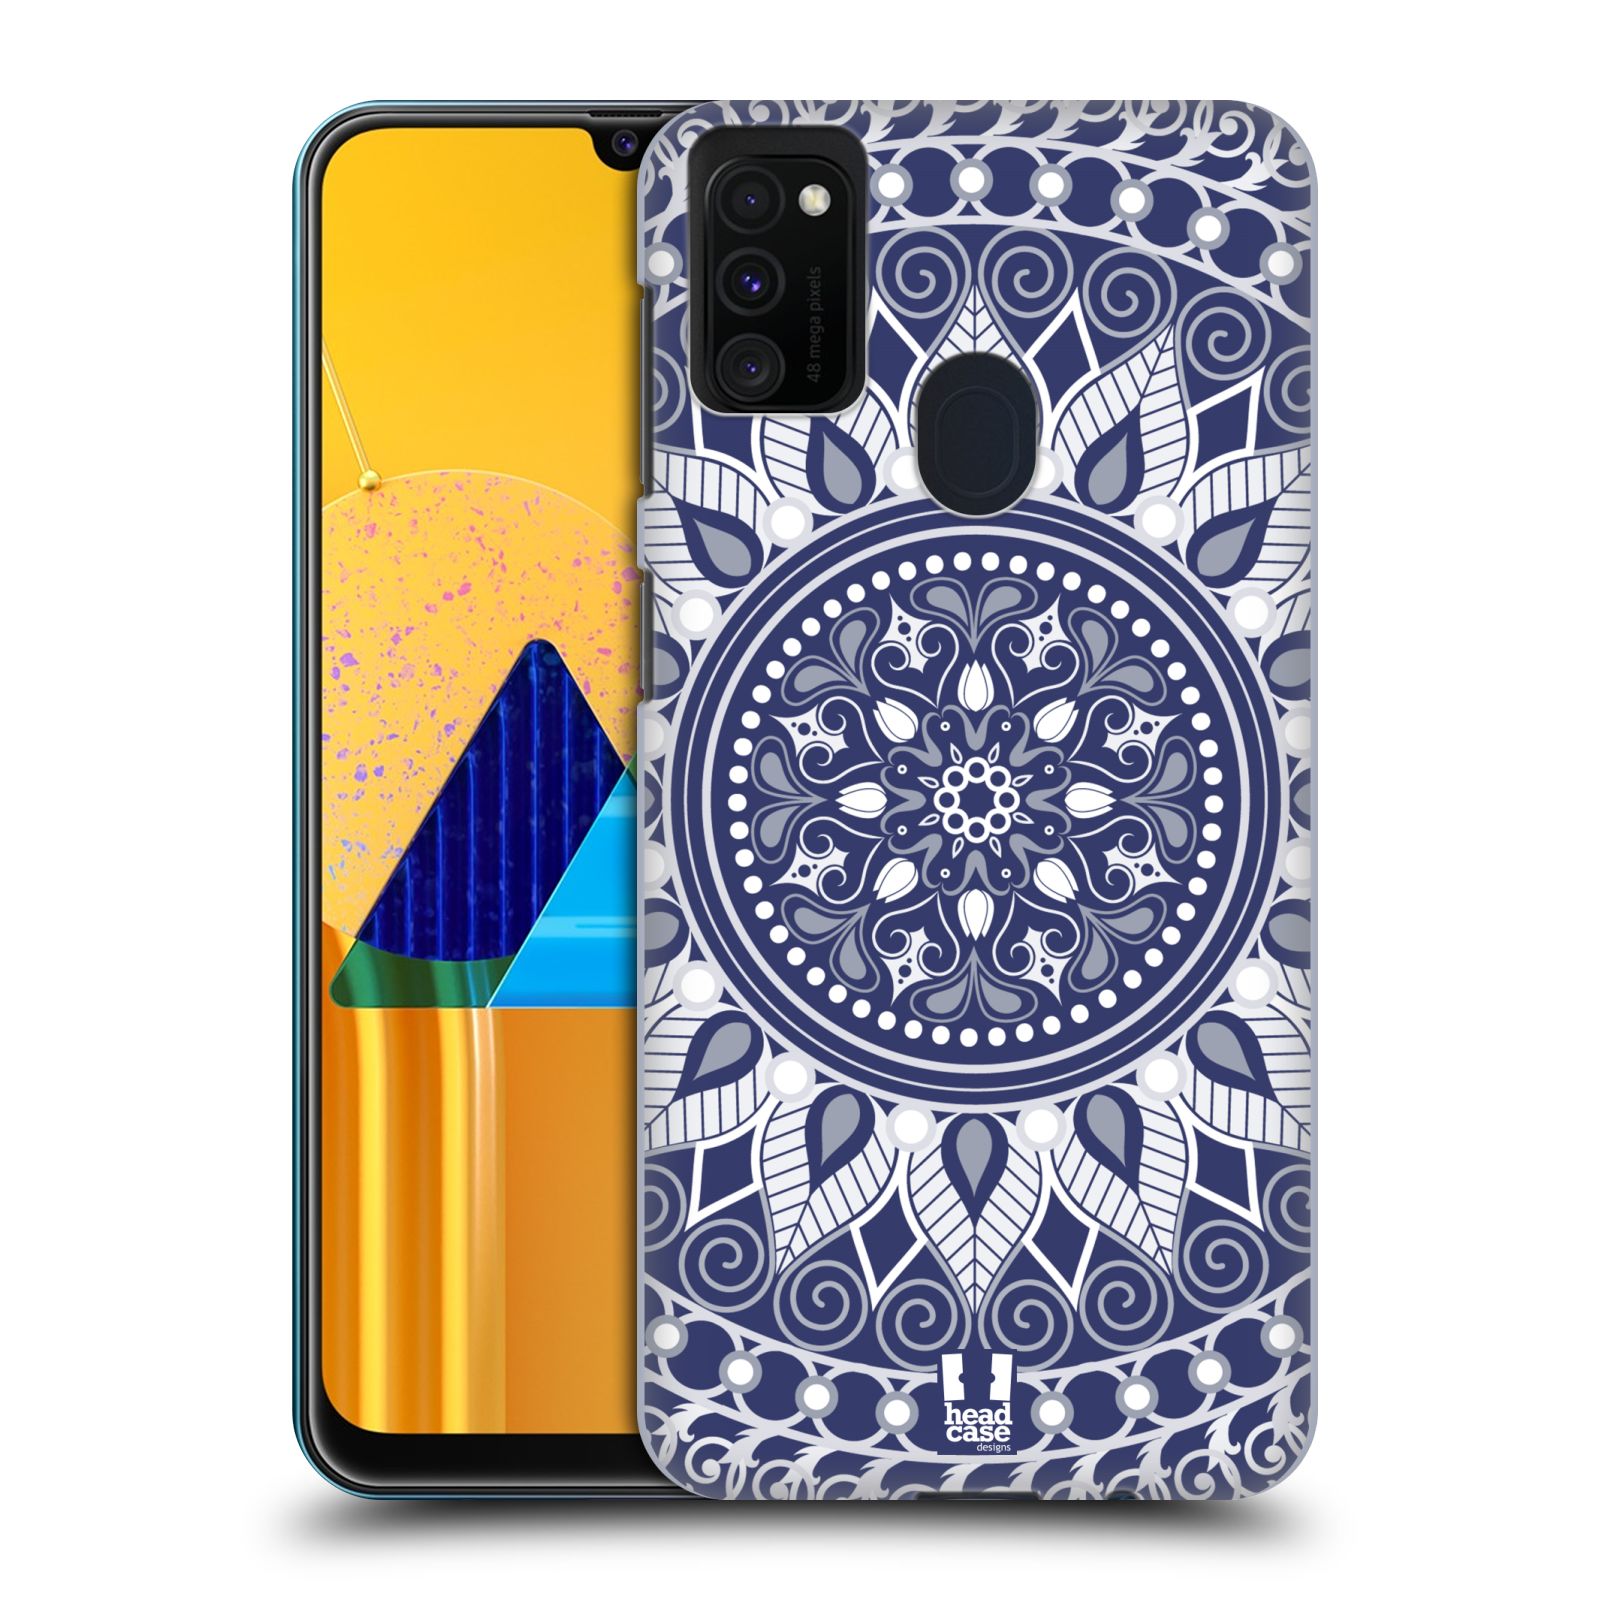 Zadní kryt na mobil Samsung Galaxy M21 vzor Indie Mandala slunce barevný motiv MODRÁ